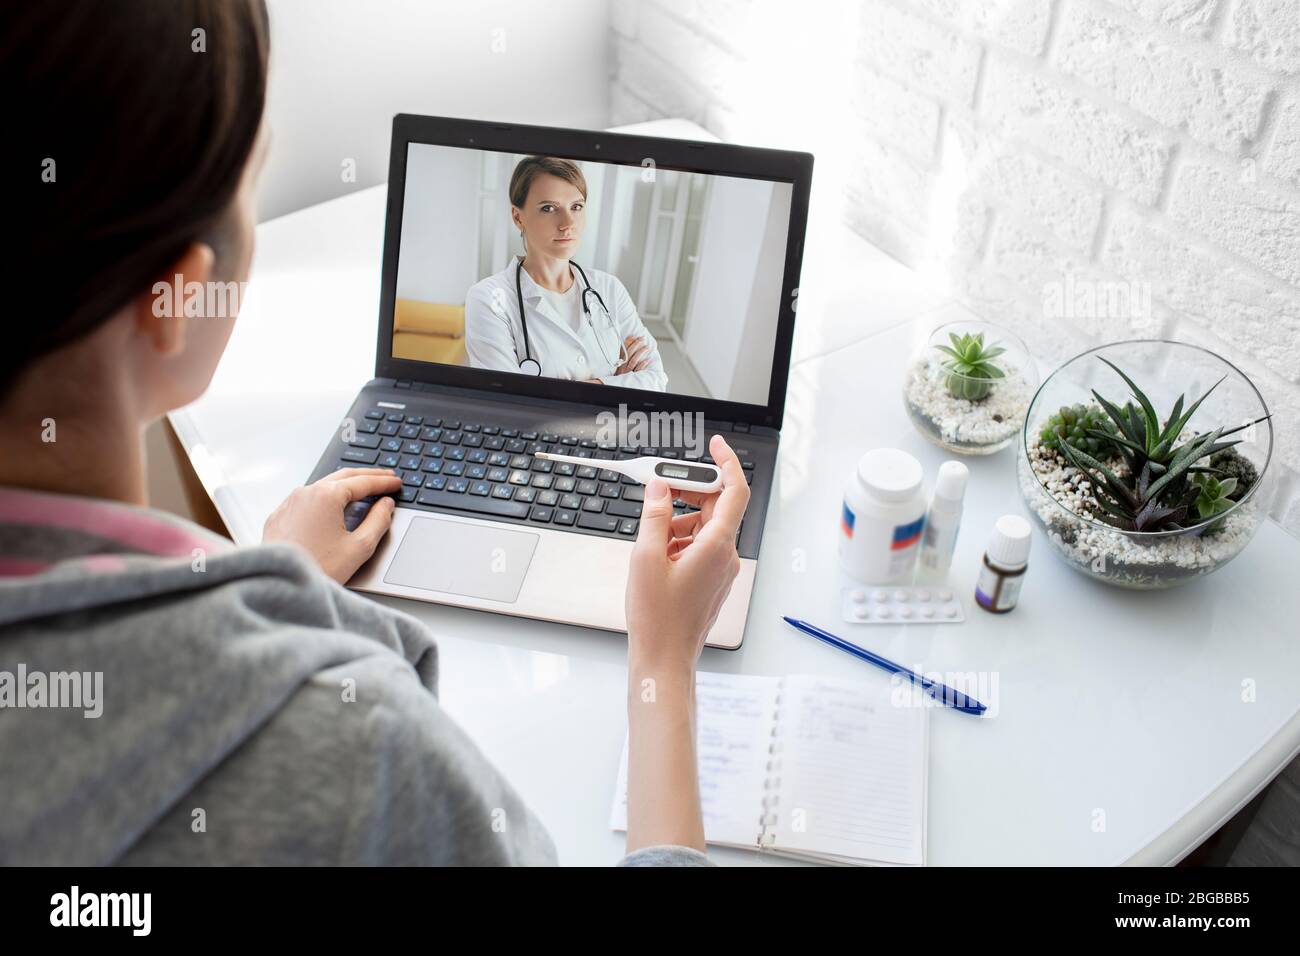 Una donna con una febbre alta ha avuto l'influenza, una consultazione online con il suo medico terapeuta. tecnologia medica, video chat con un medico Foto Stock